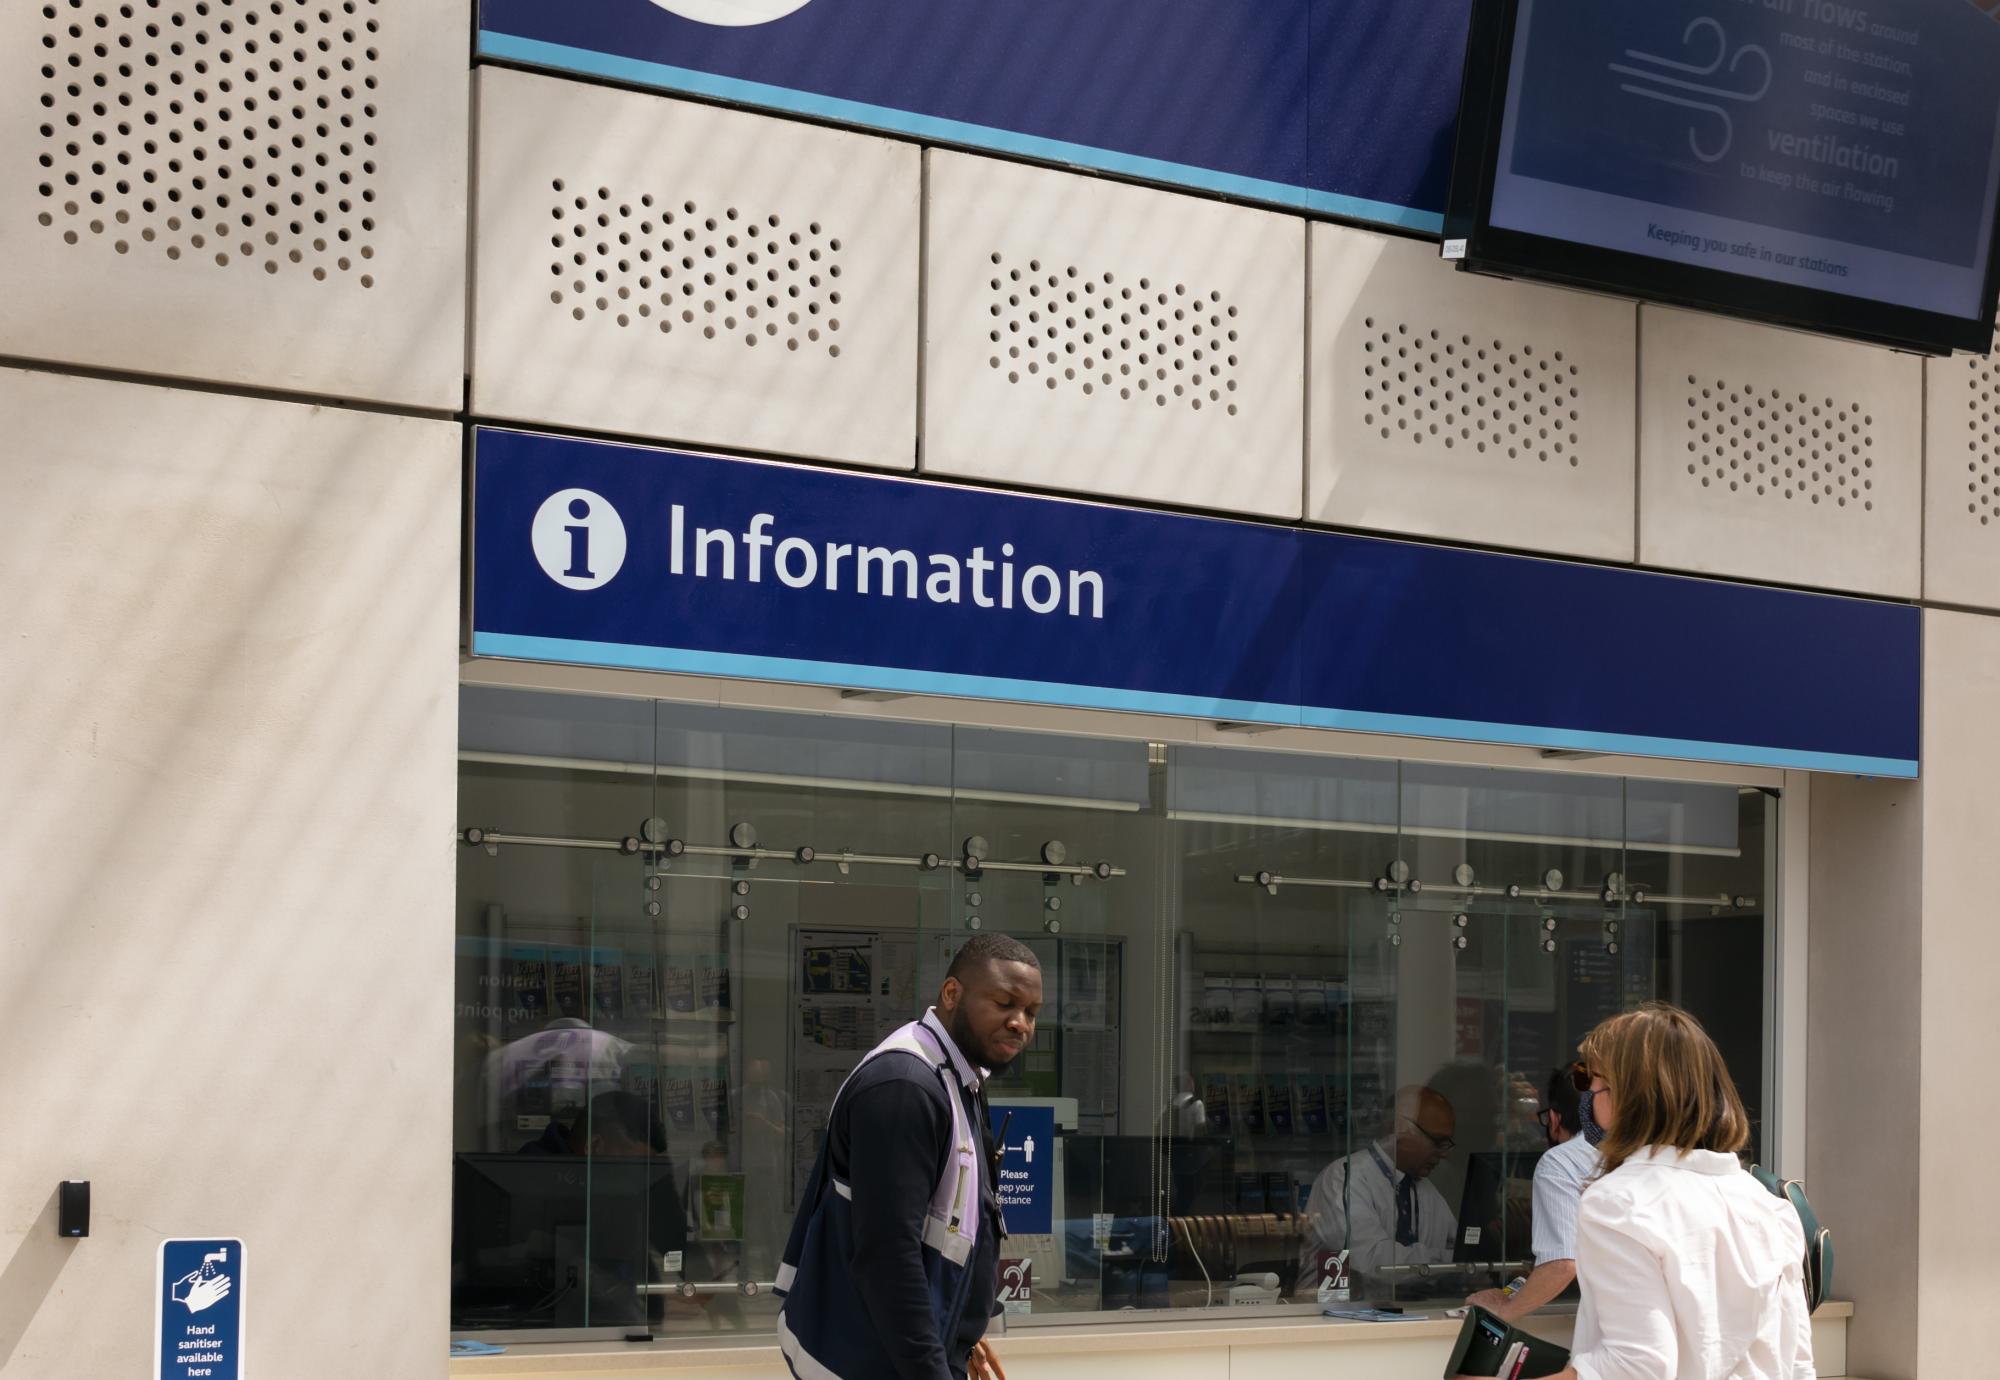 Information desk in London, via Istock 